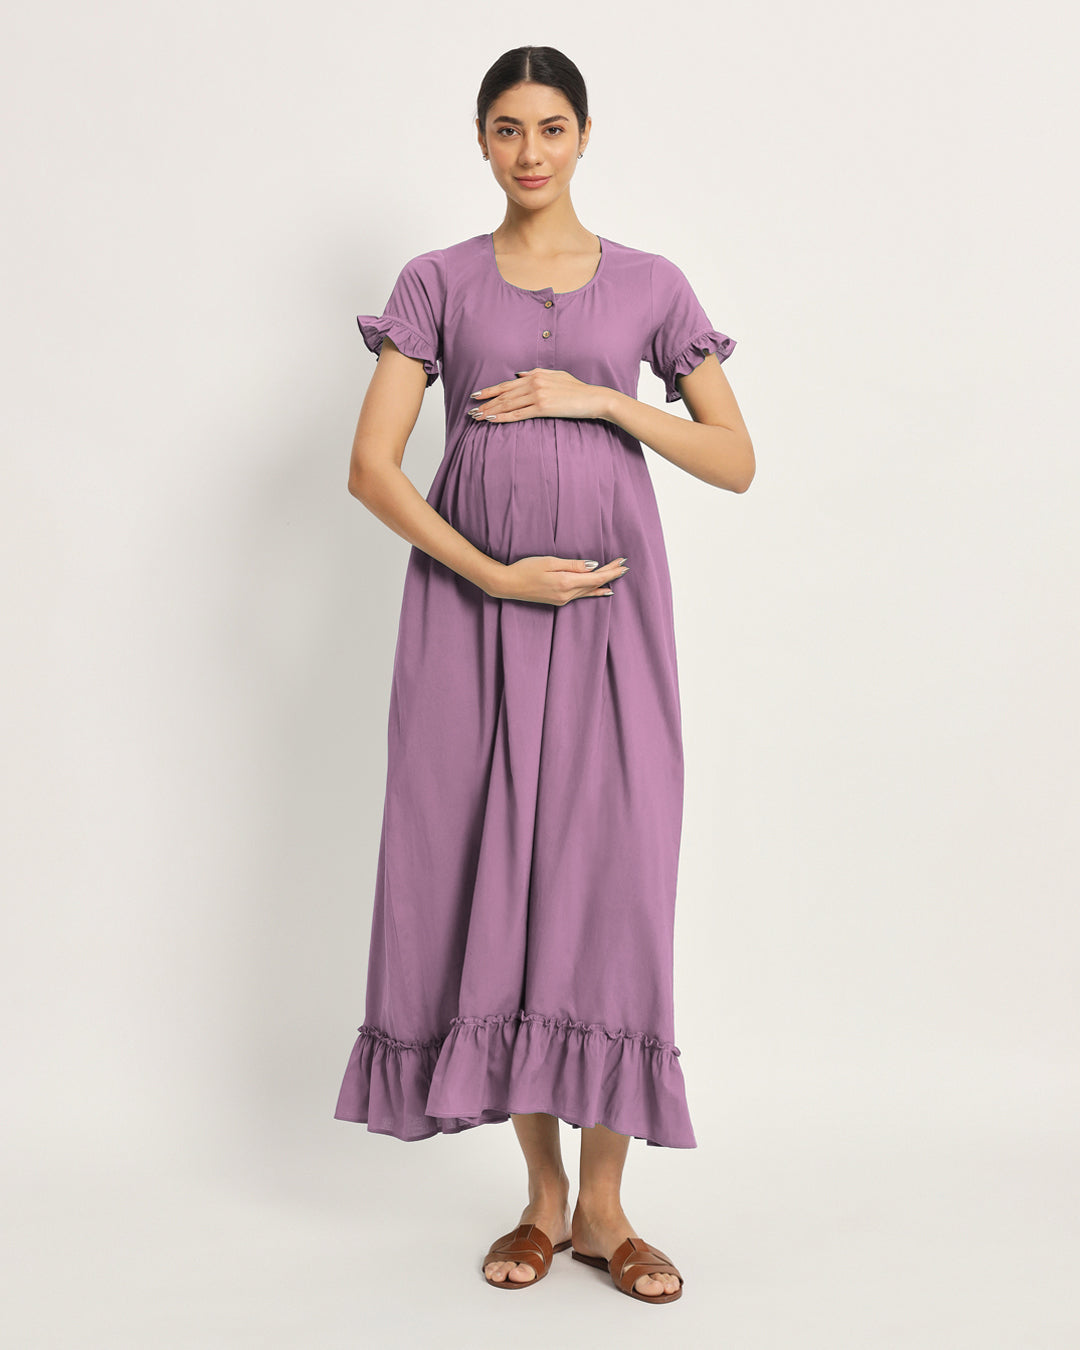 Iris Pink Bumpin' & Stylin' Maternity & Nursing Dress